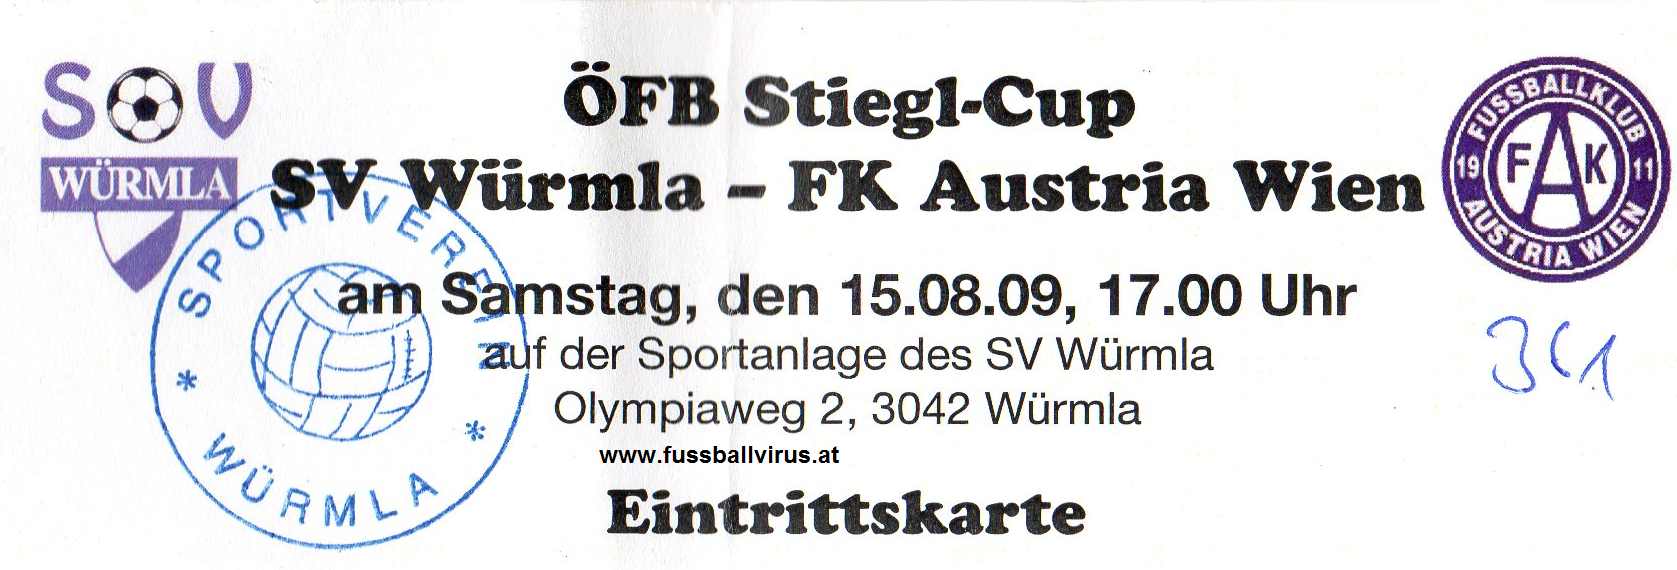 15.8. SV Würmla - FK Austria Wien